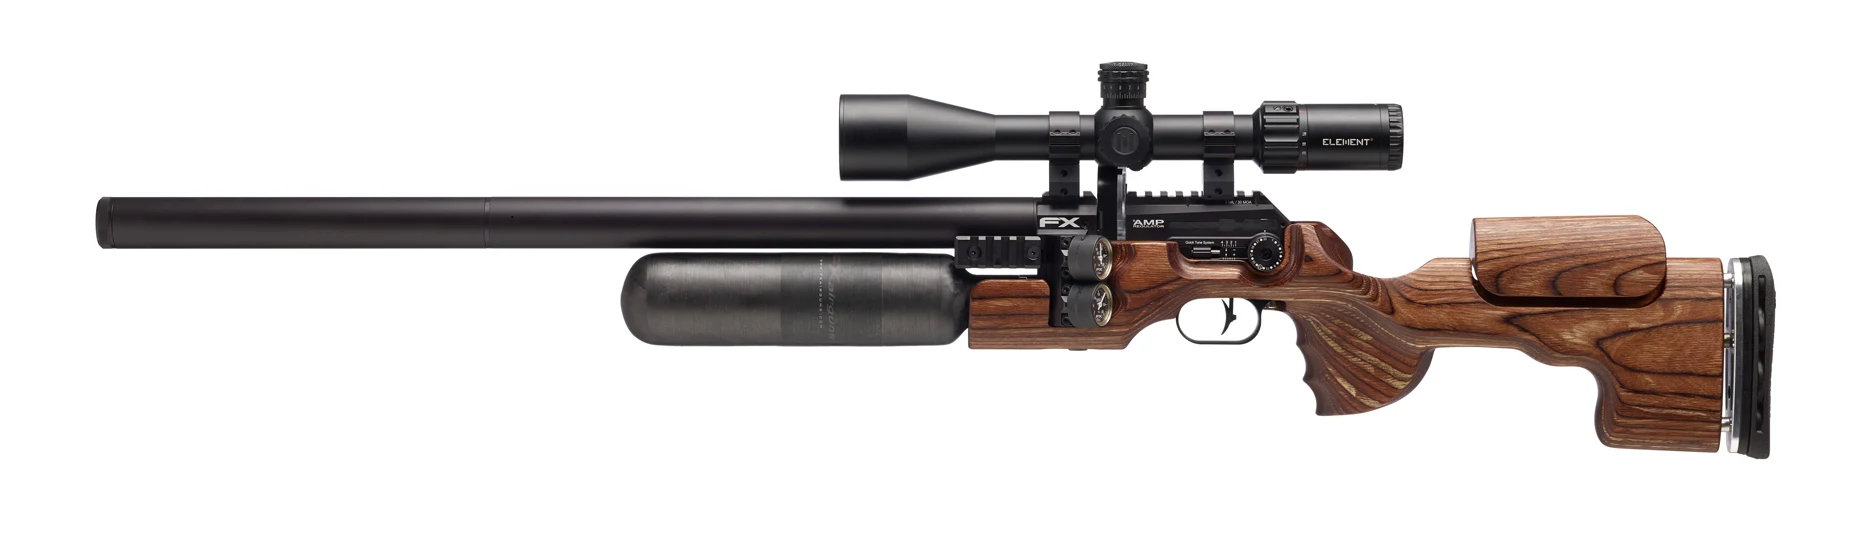 FX Airguns Brown 600mm LH